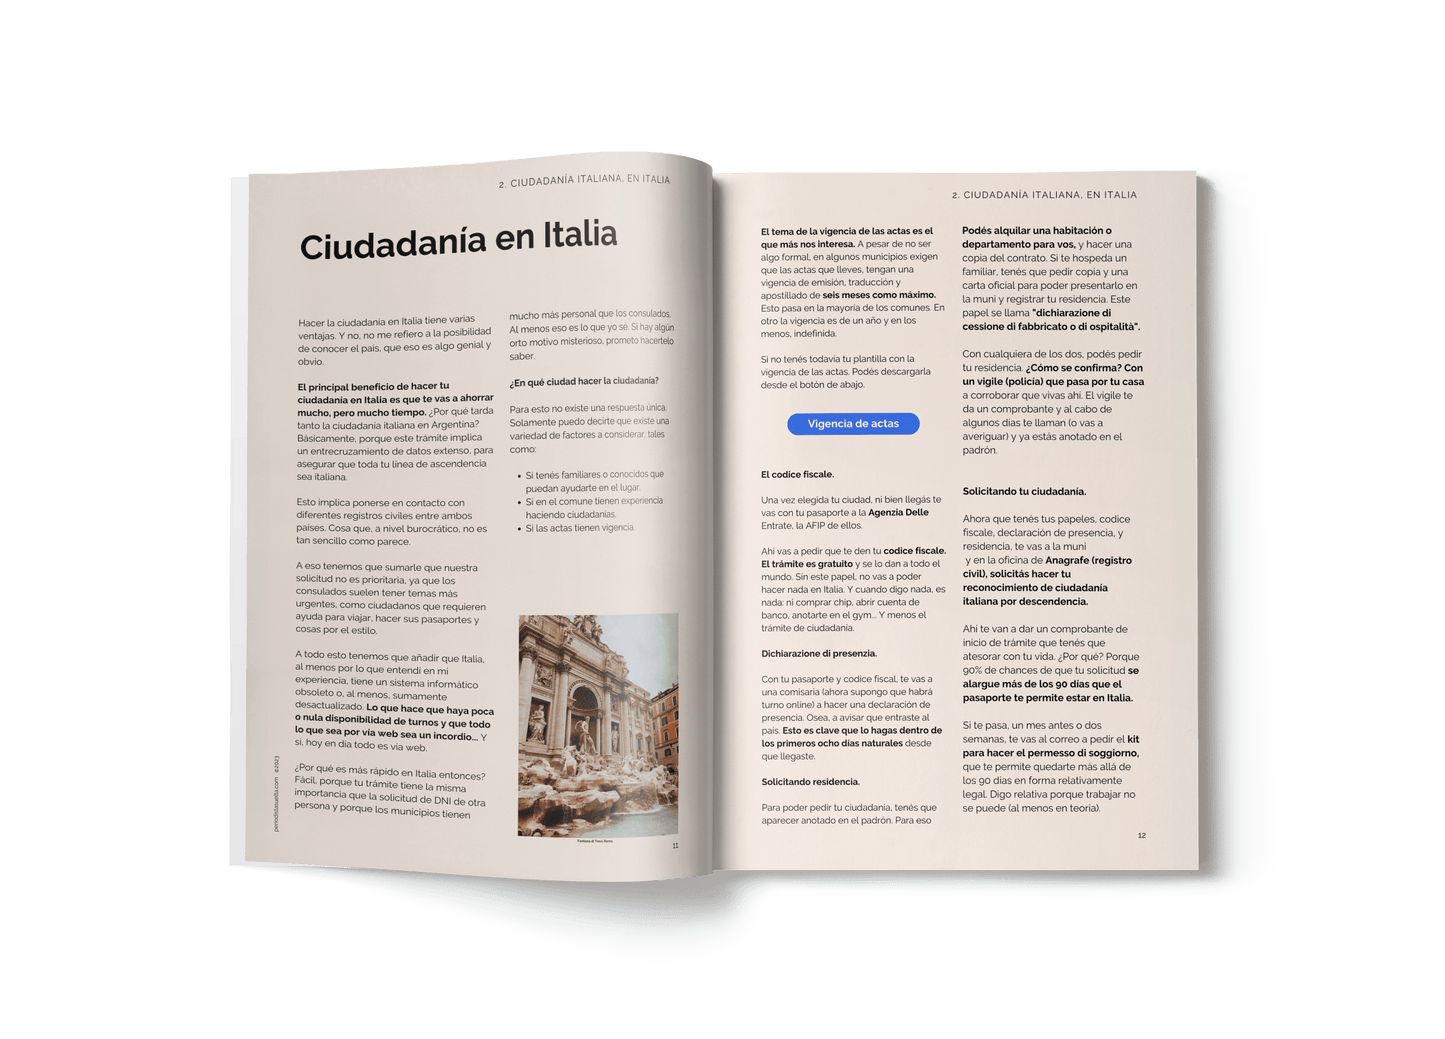 Ciudadanía italiana en Italia - Guía completa